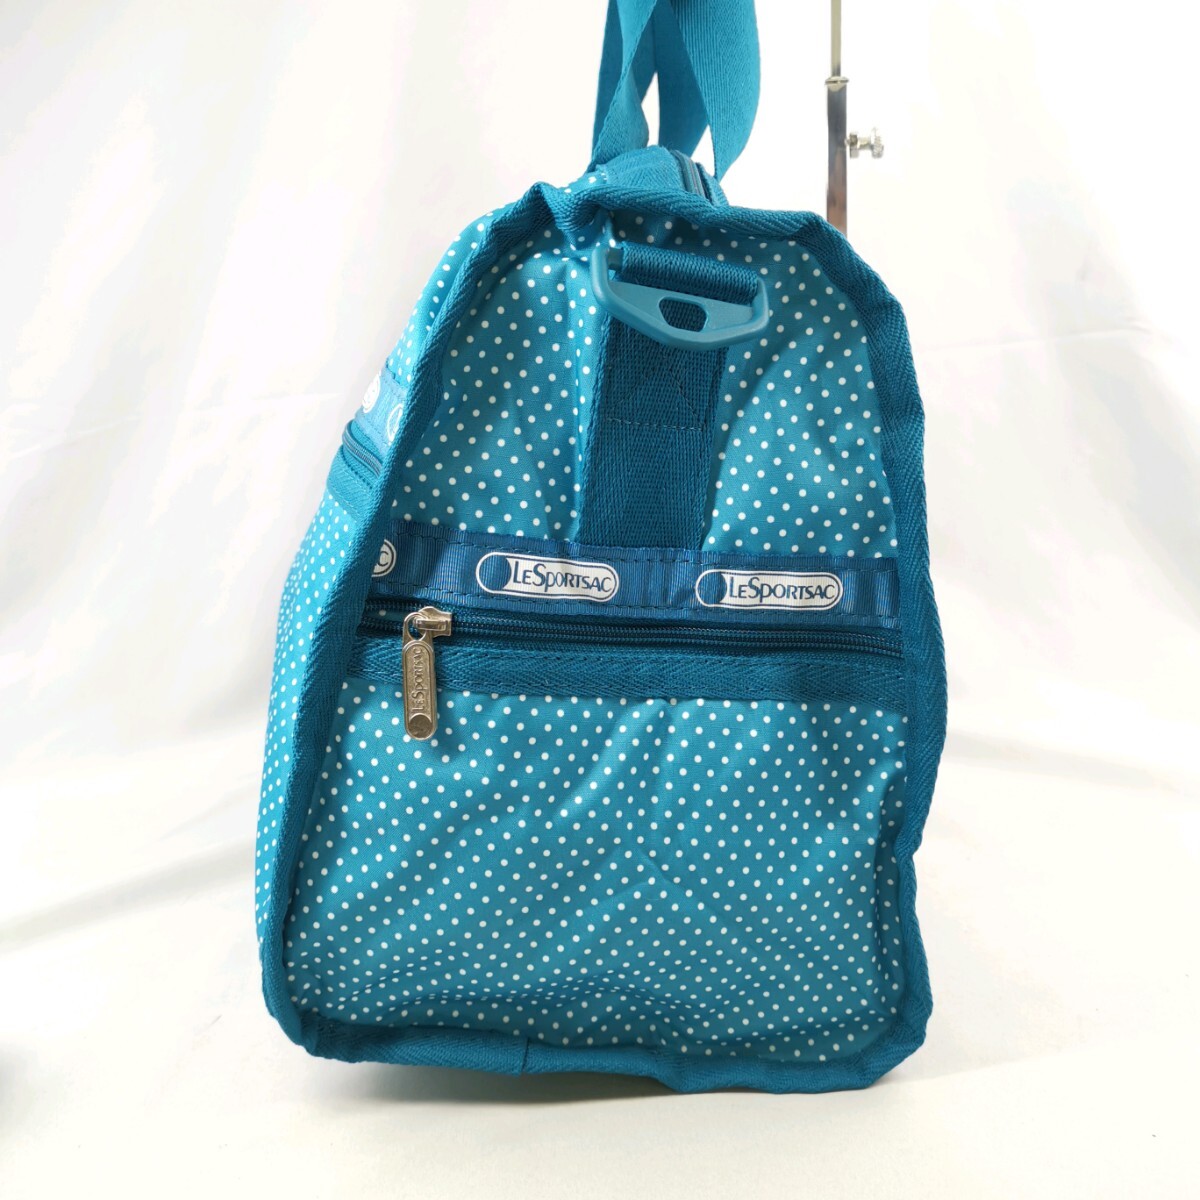 D ×【商品ランク:B】レスポートサック LeSportsac ロゴデザイン ドット柄 2way ショルダーベルト付 ボストン / トラベル バッグ 婦人鞄の画像3